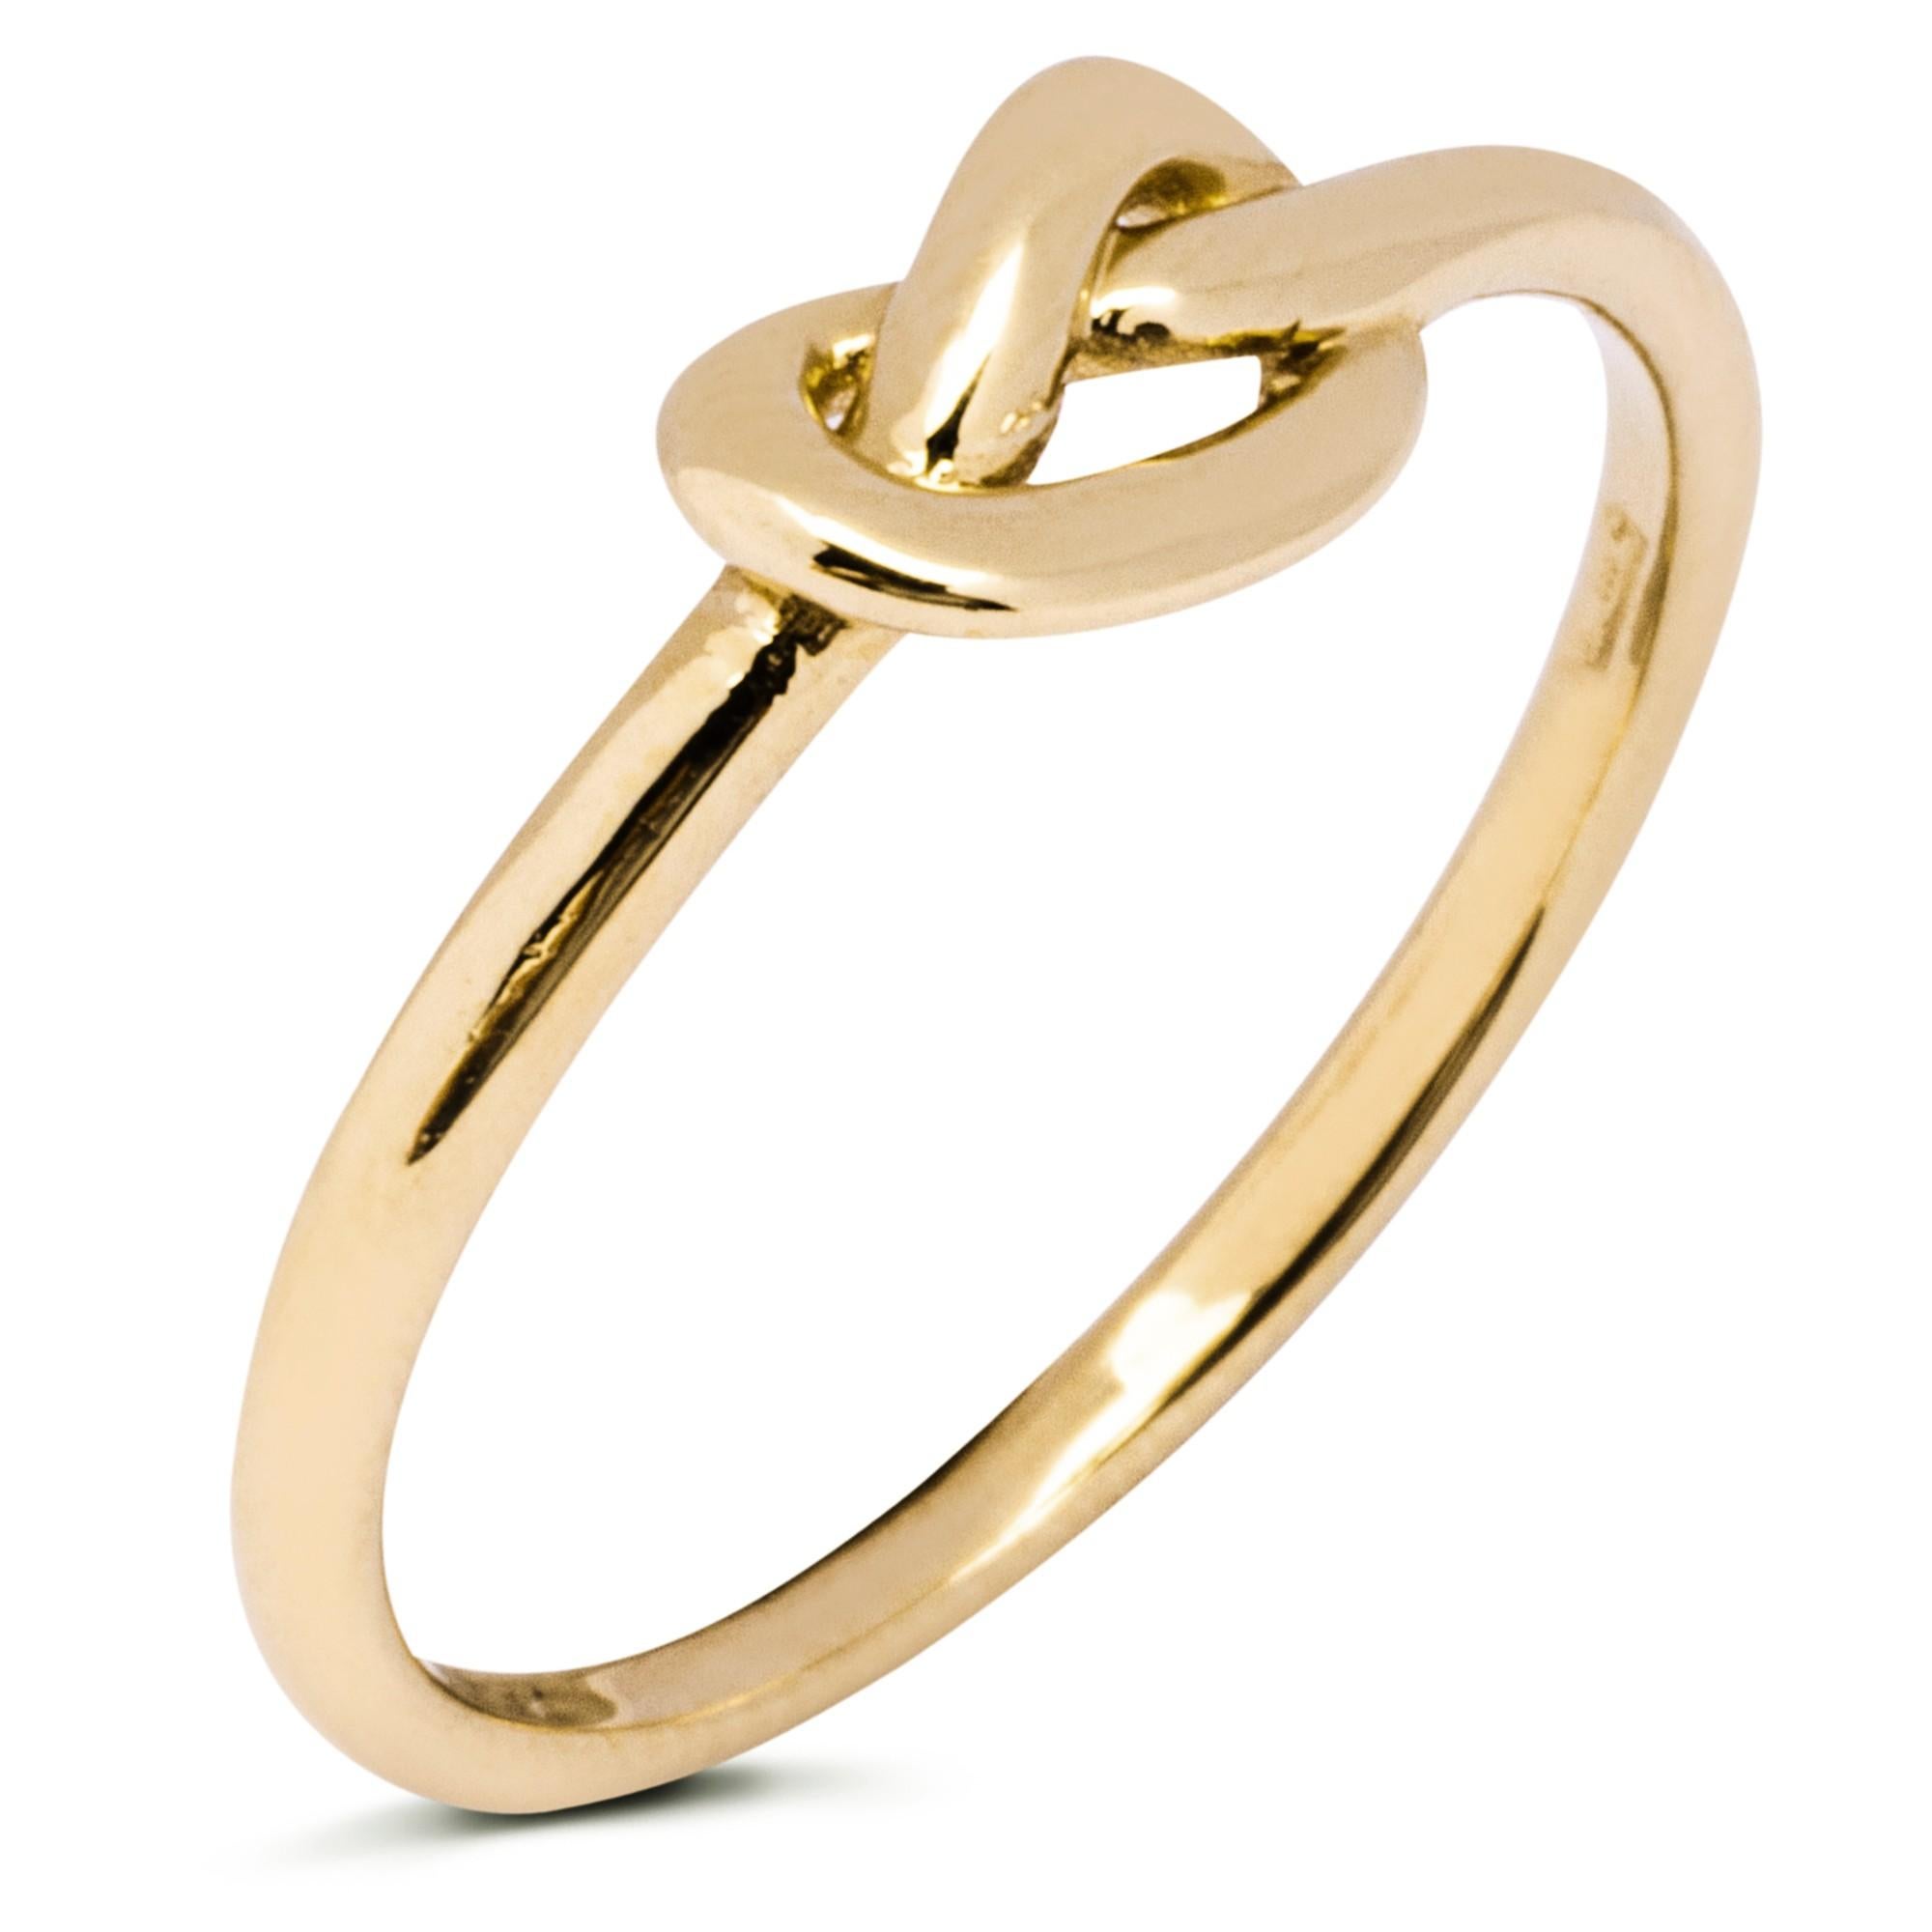 Collection AleX Jona, faite à la main en Italie, bague petit nœud d'amour en or jaune 18 carats.

Les bijoux Alex Jona se distinguent, non seulement par leur design particulier et par l'excellente qualité des pierres précieuses, mais aussi par